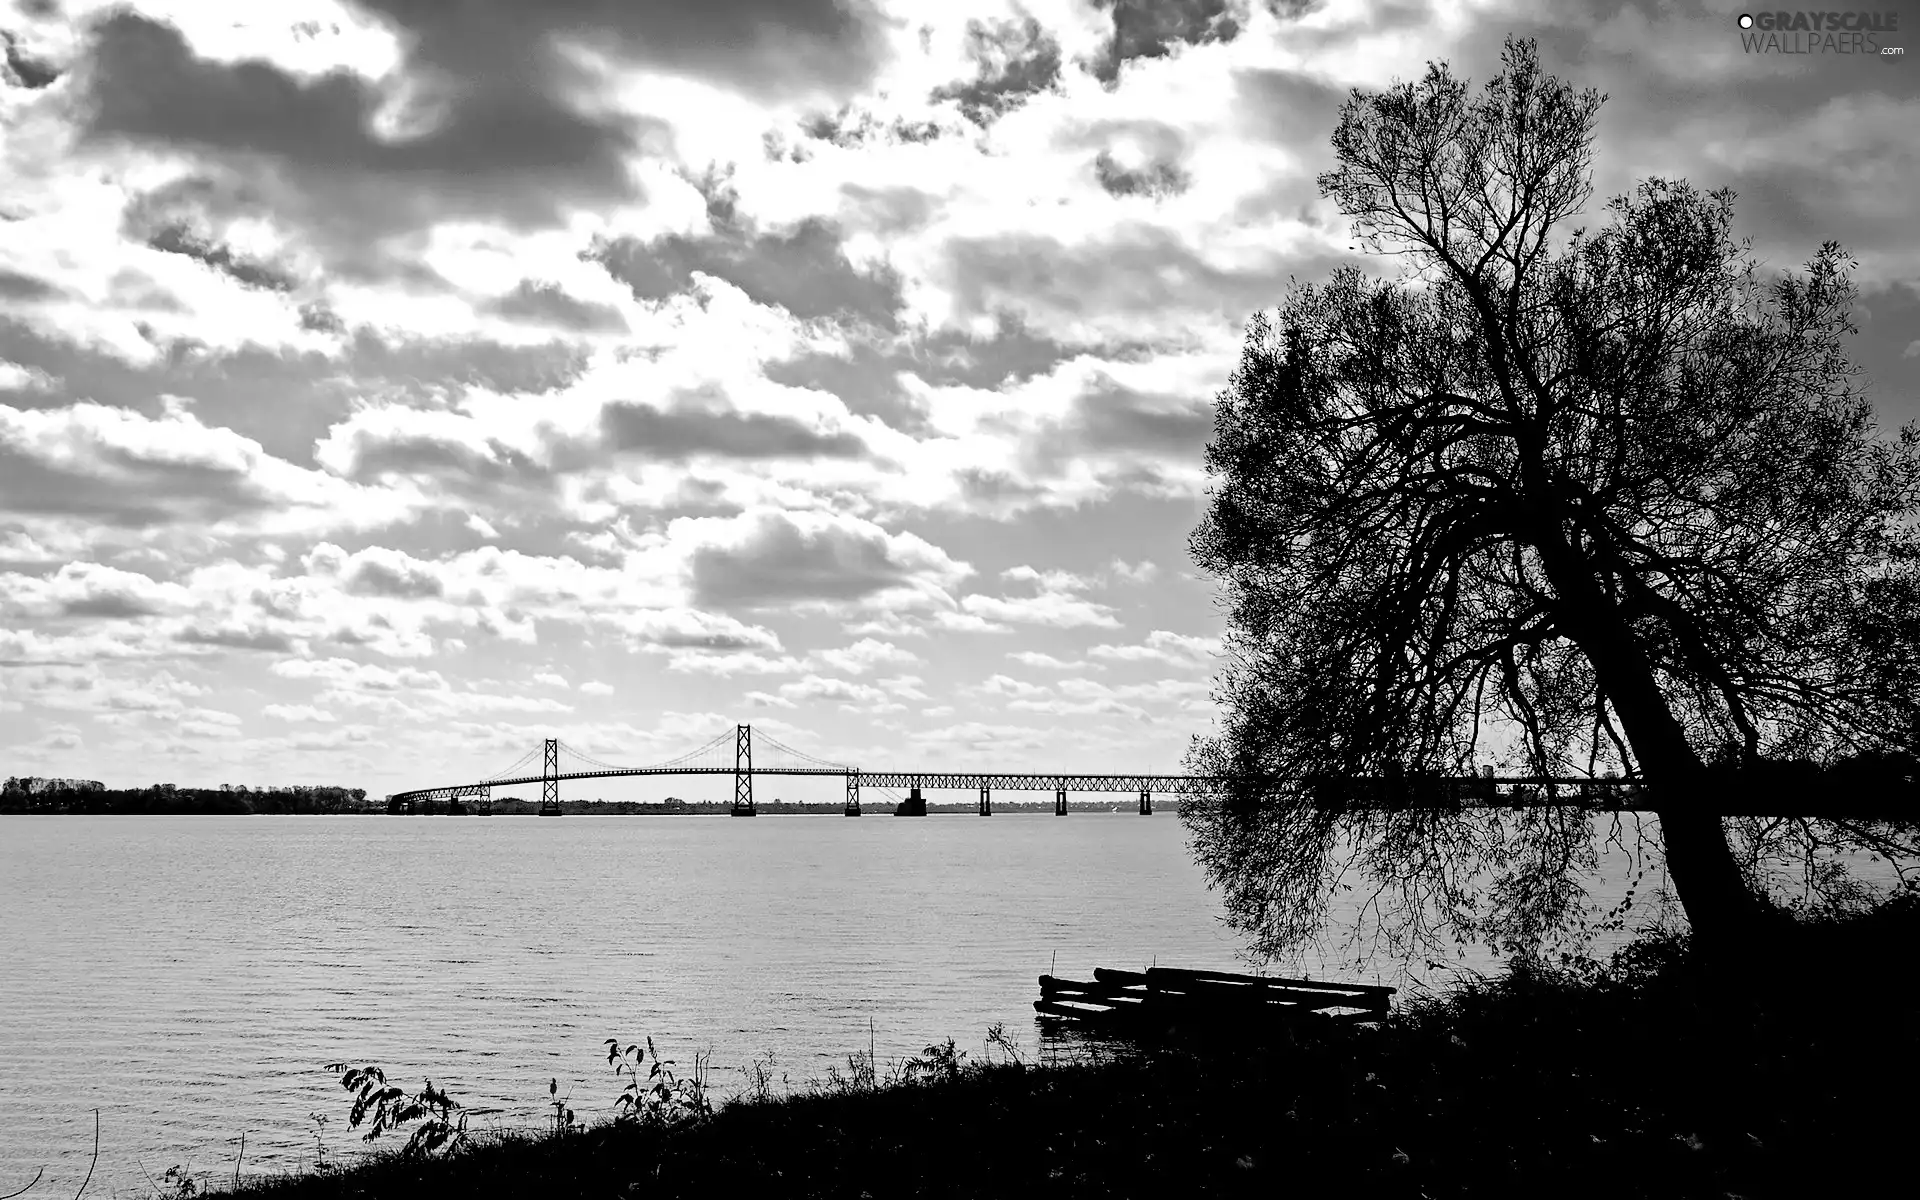 clouds, River, bridge